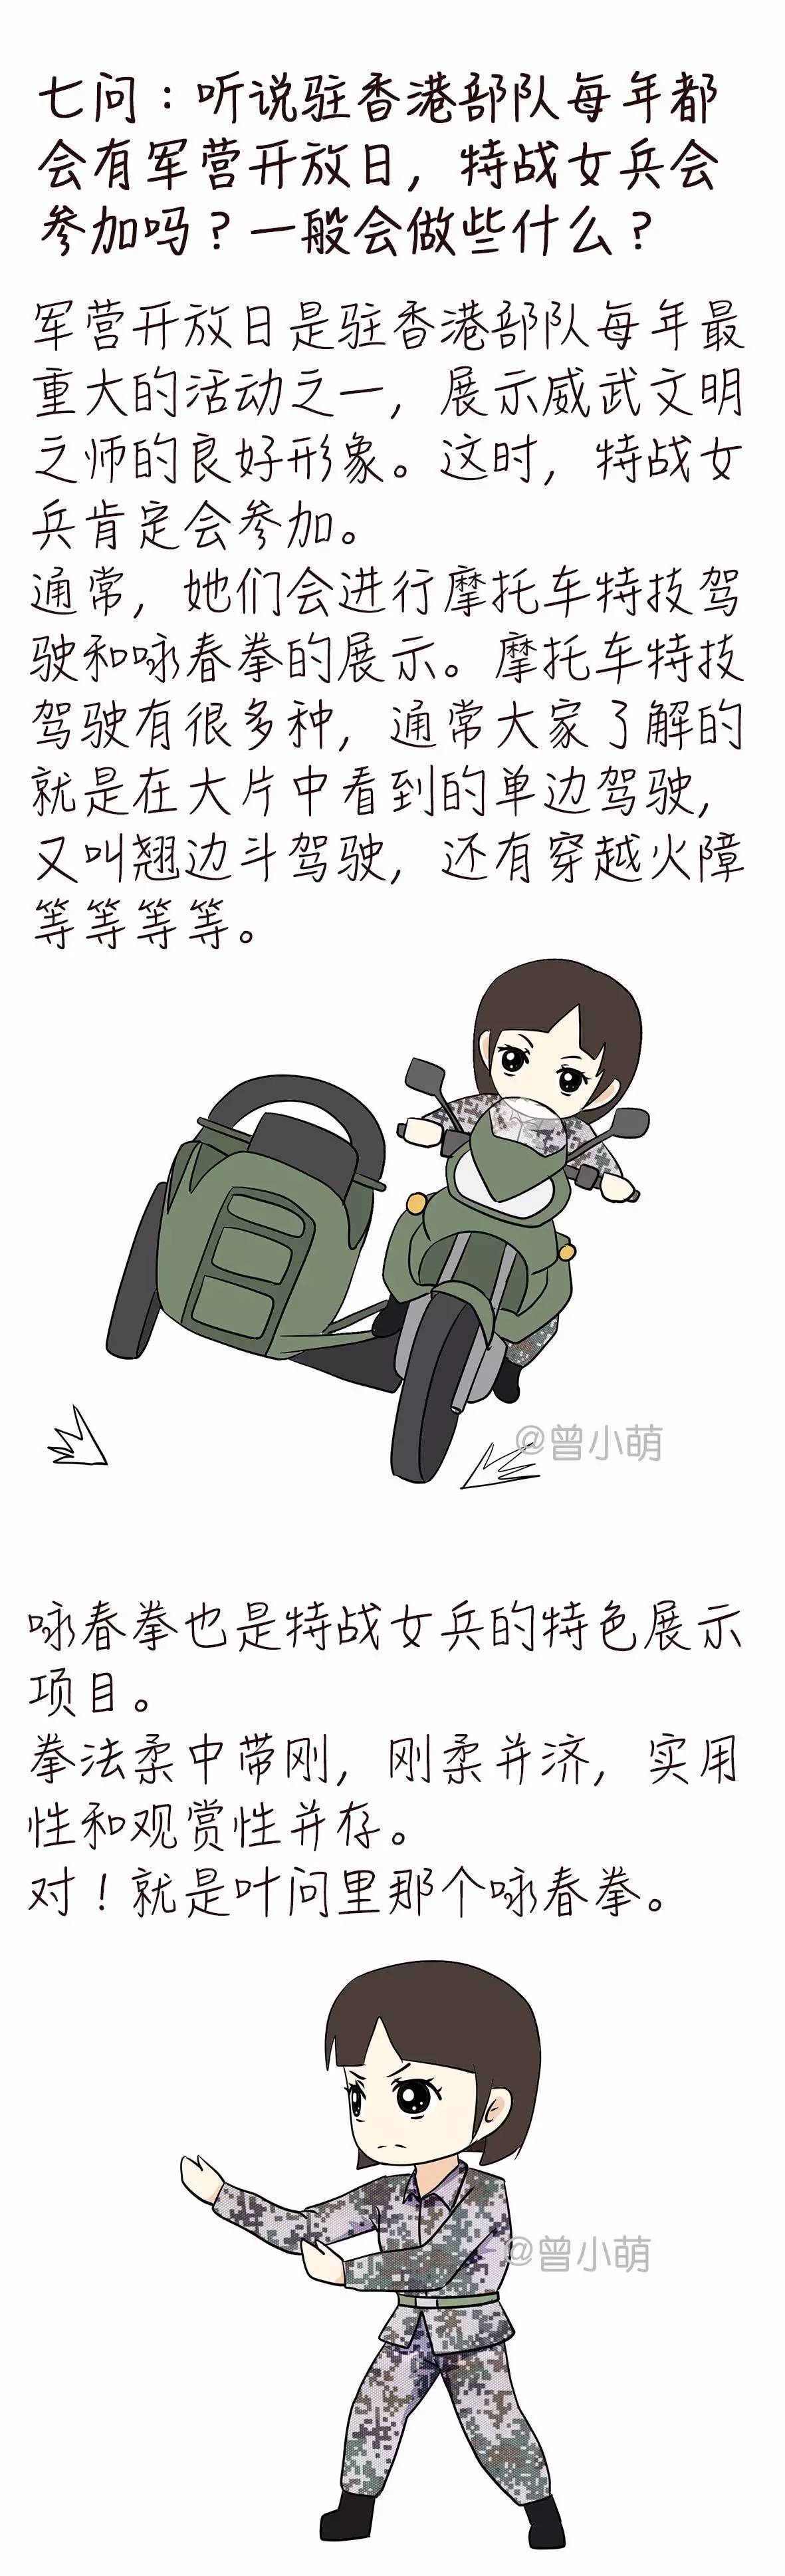 萌漫 9问9答,揭秘驻香港部队特战女兵鲜为人知的训练生活